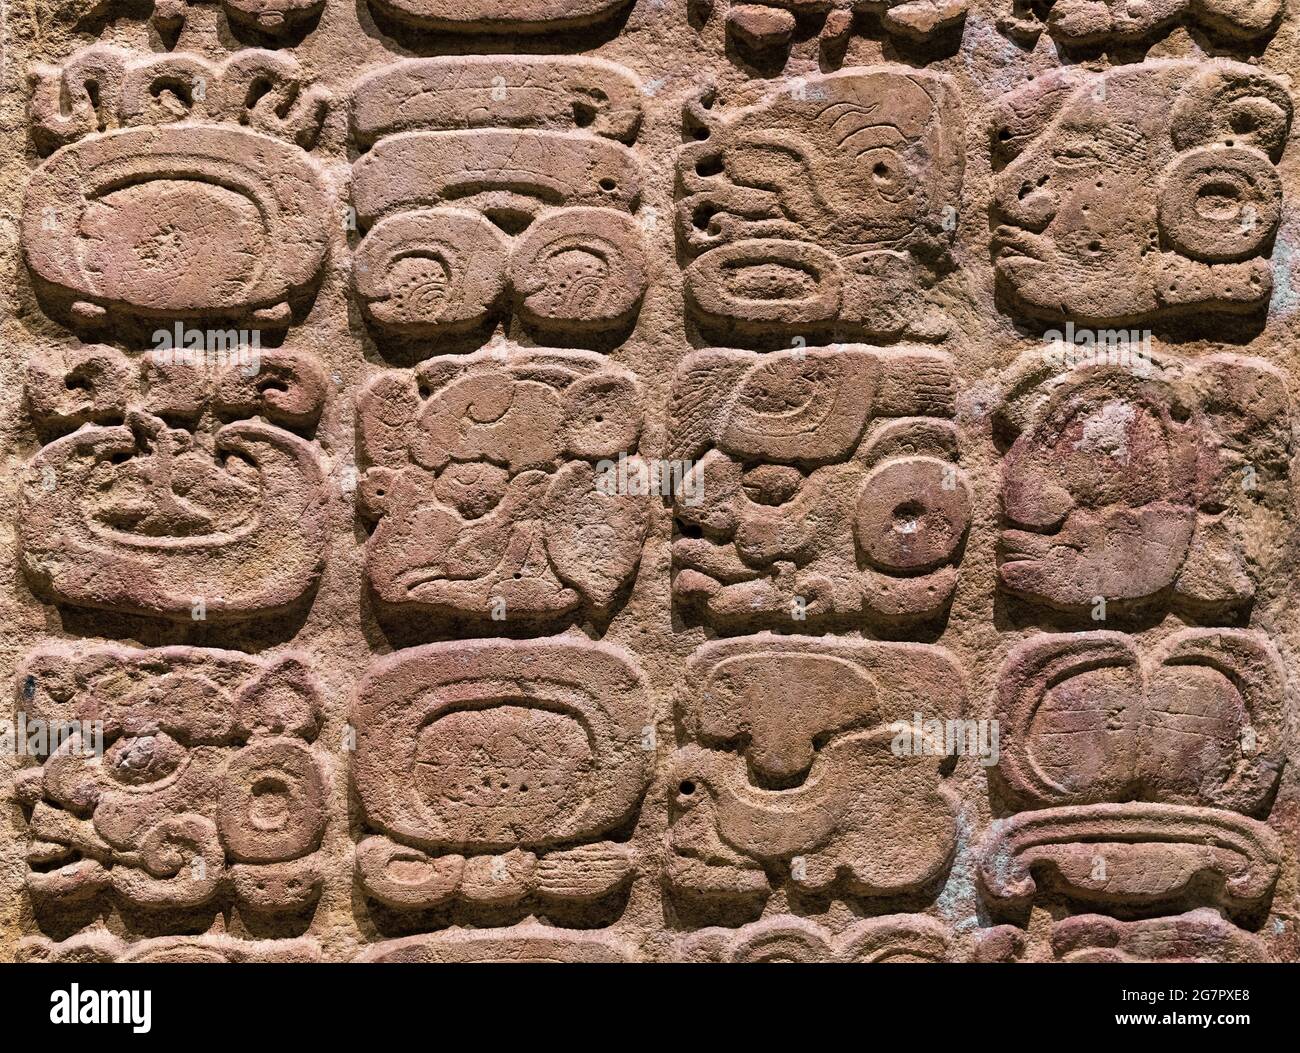 Mayan Alphabet.gros plan du système d'écriture de glyphe hiéroglyphe à Copan (Honduras), Tikal (Guatemala) et Chichen Itza, Palenque, Uxmal, Bonampak (Mexique) Banque D'Images